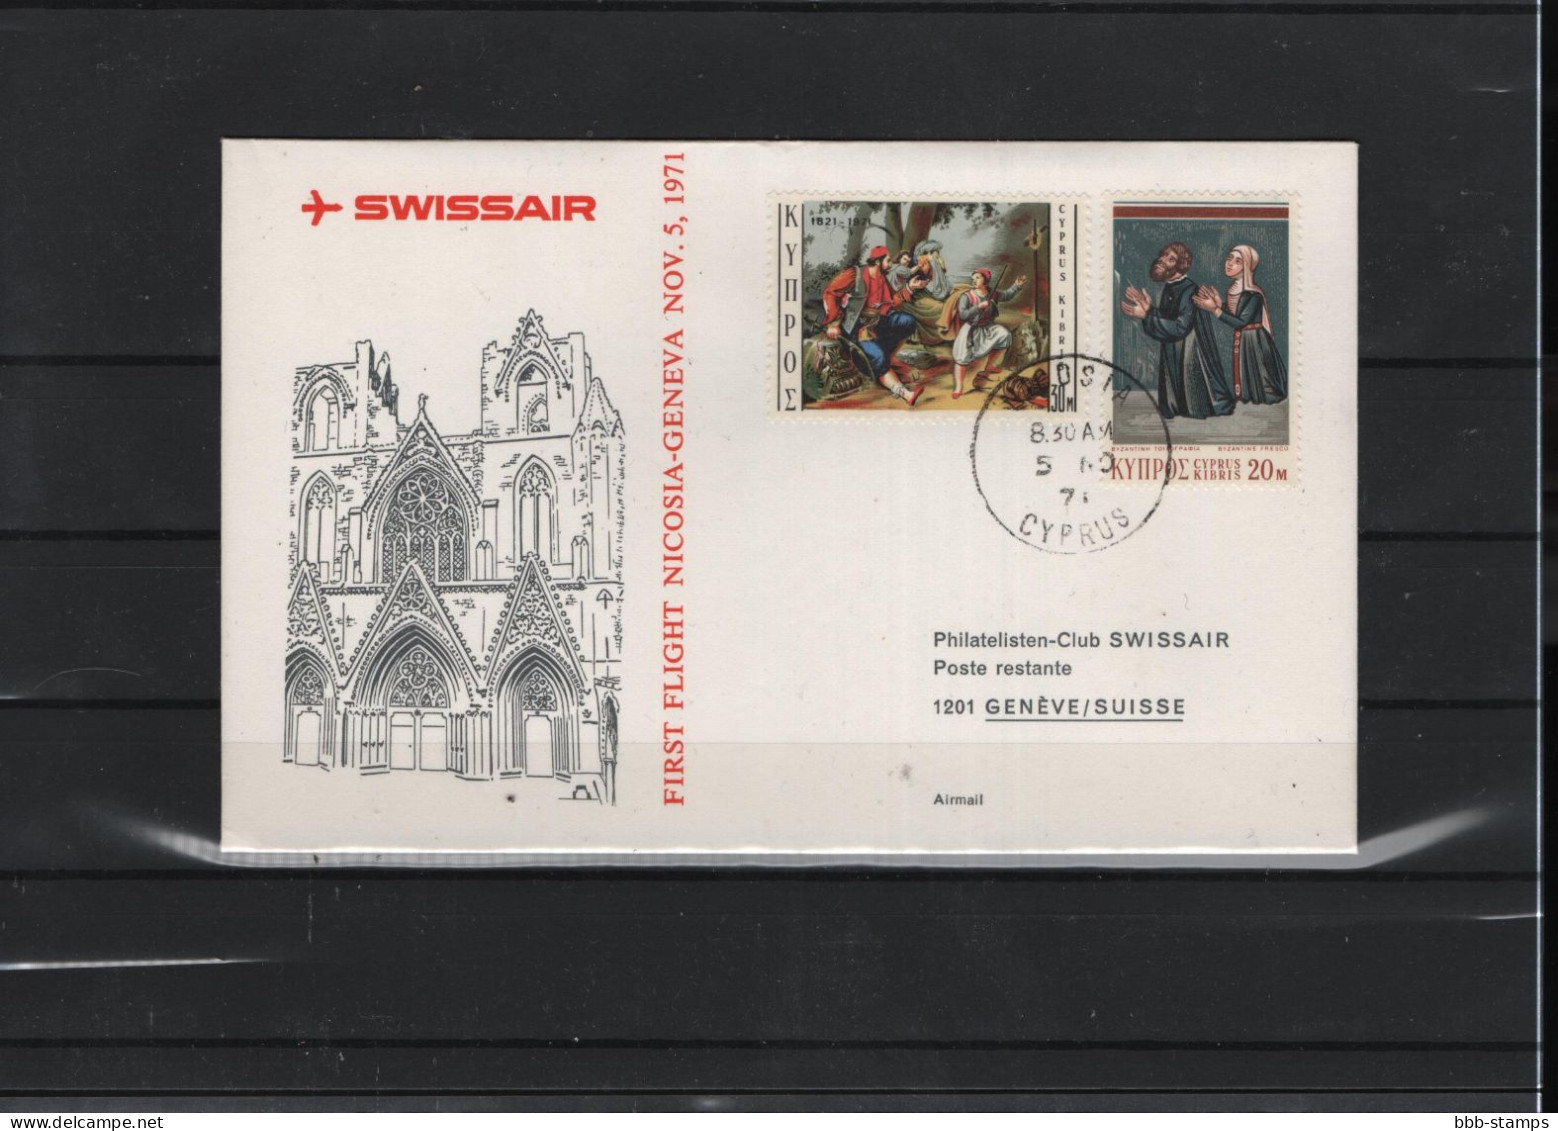 Schweiz Luftpost FFC Swissair  5.11.1971 - Erst- U. Sonderflugbriefe